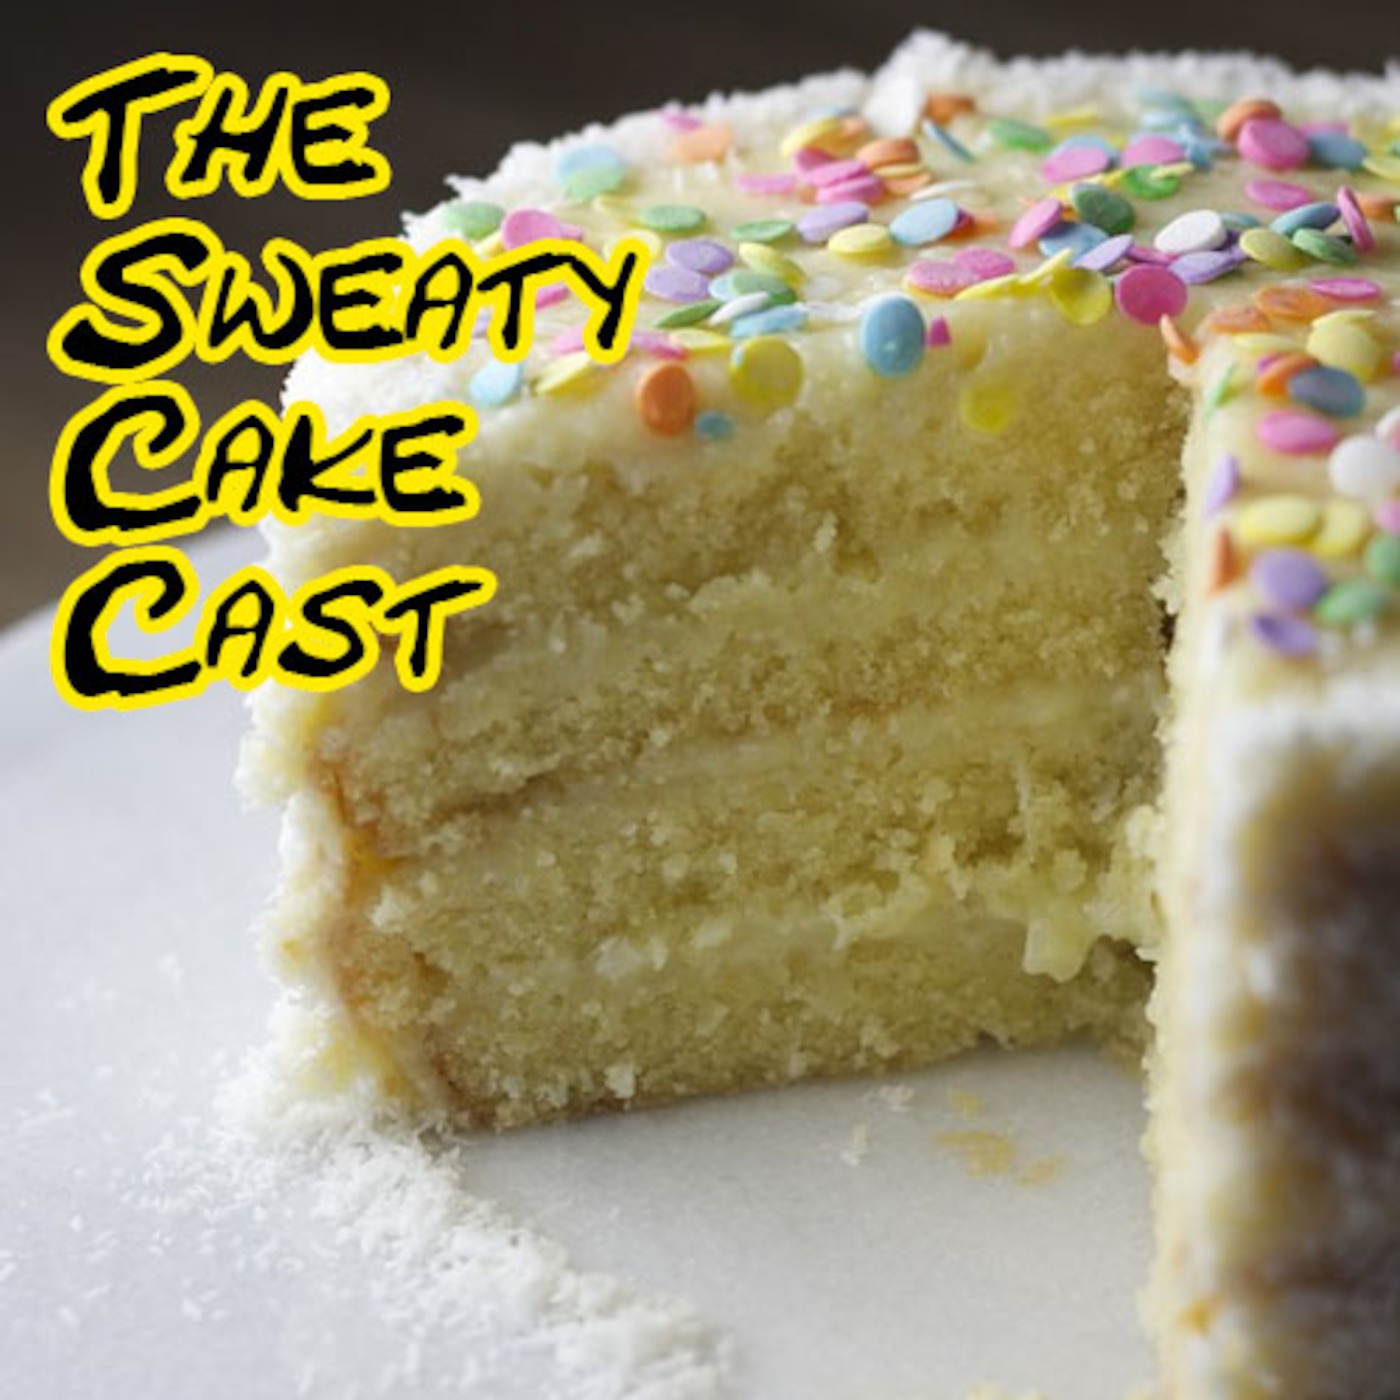 The Sweaty Cake Cast #1 - "My best friend Thor"